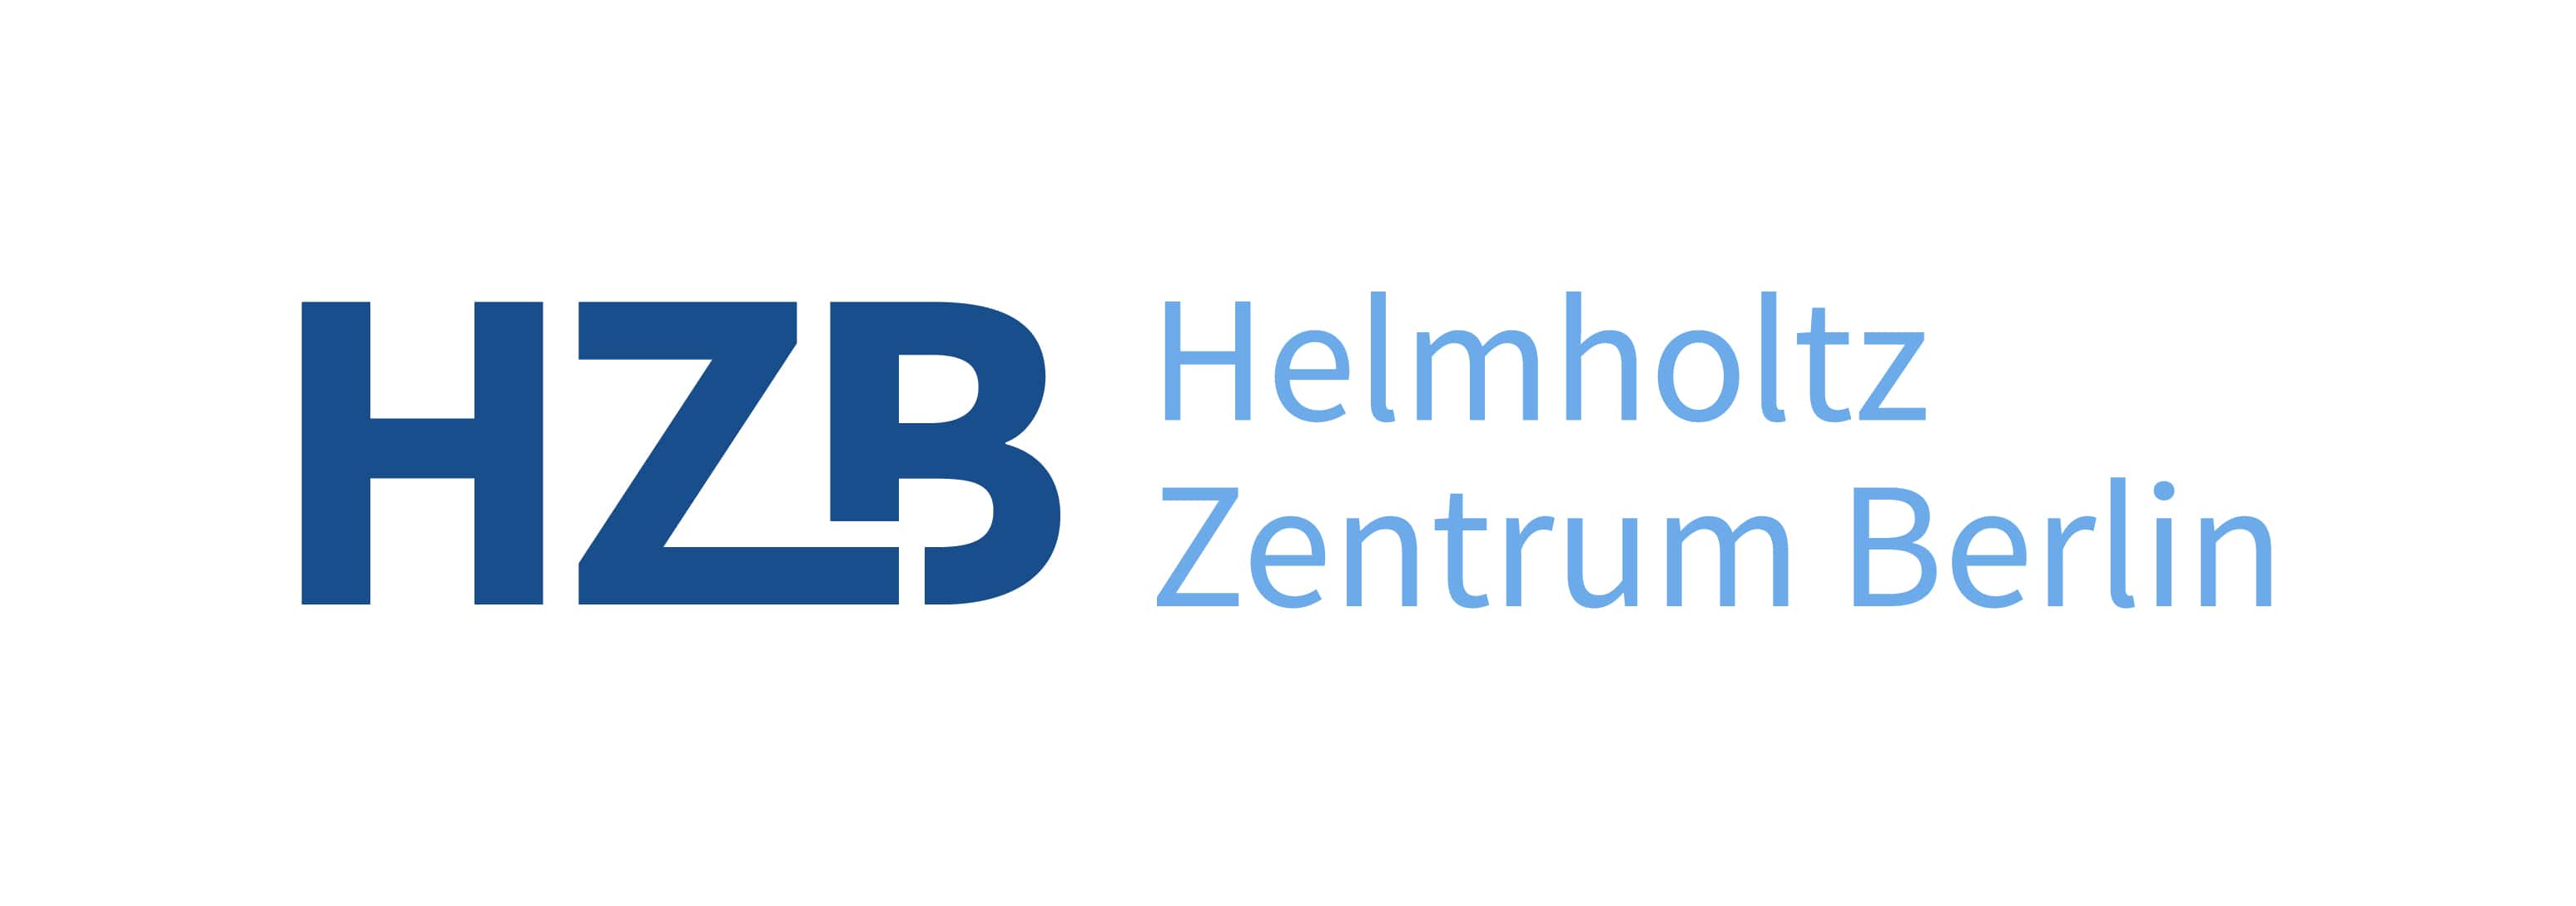 Helmholtz-Zentrum Berlin